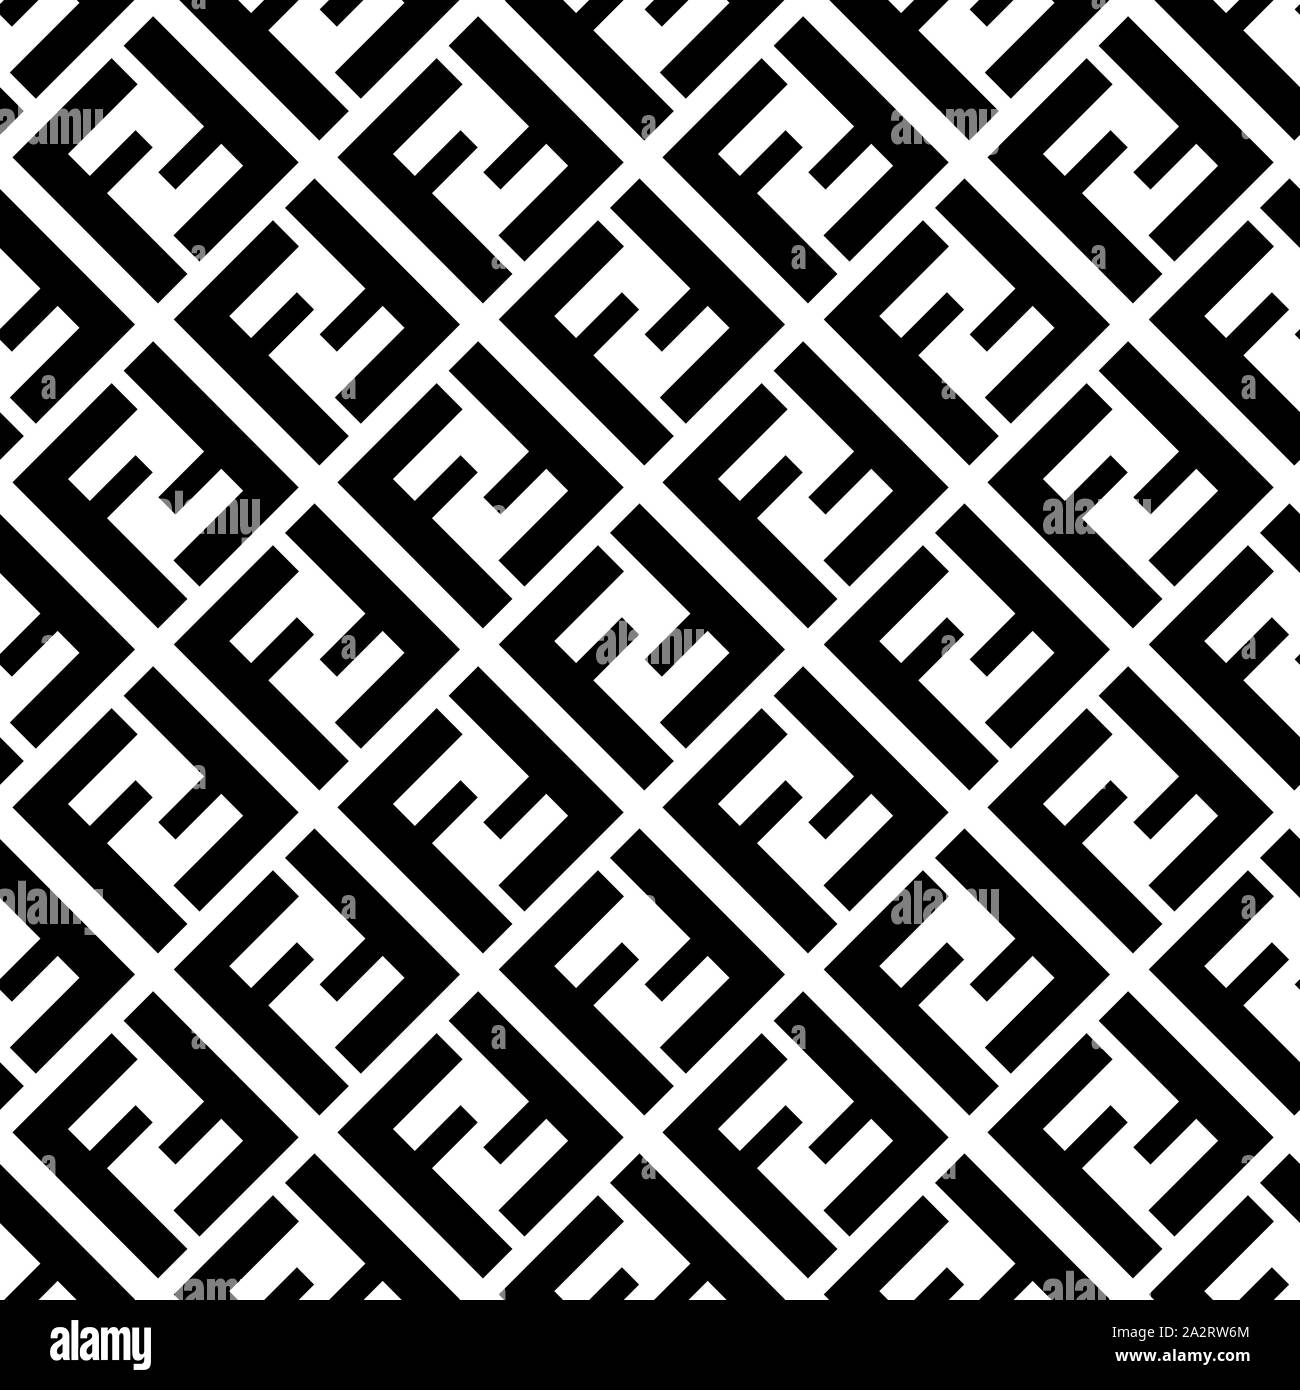 Seamless pattern with fendi logo 